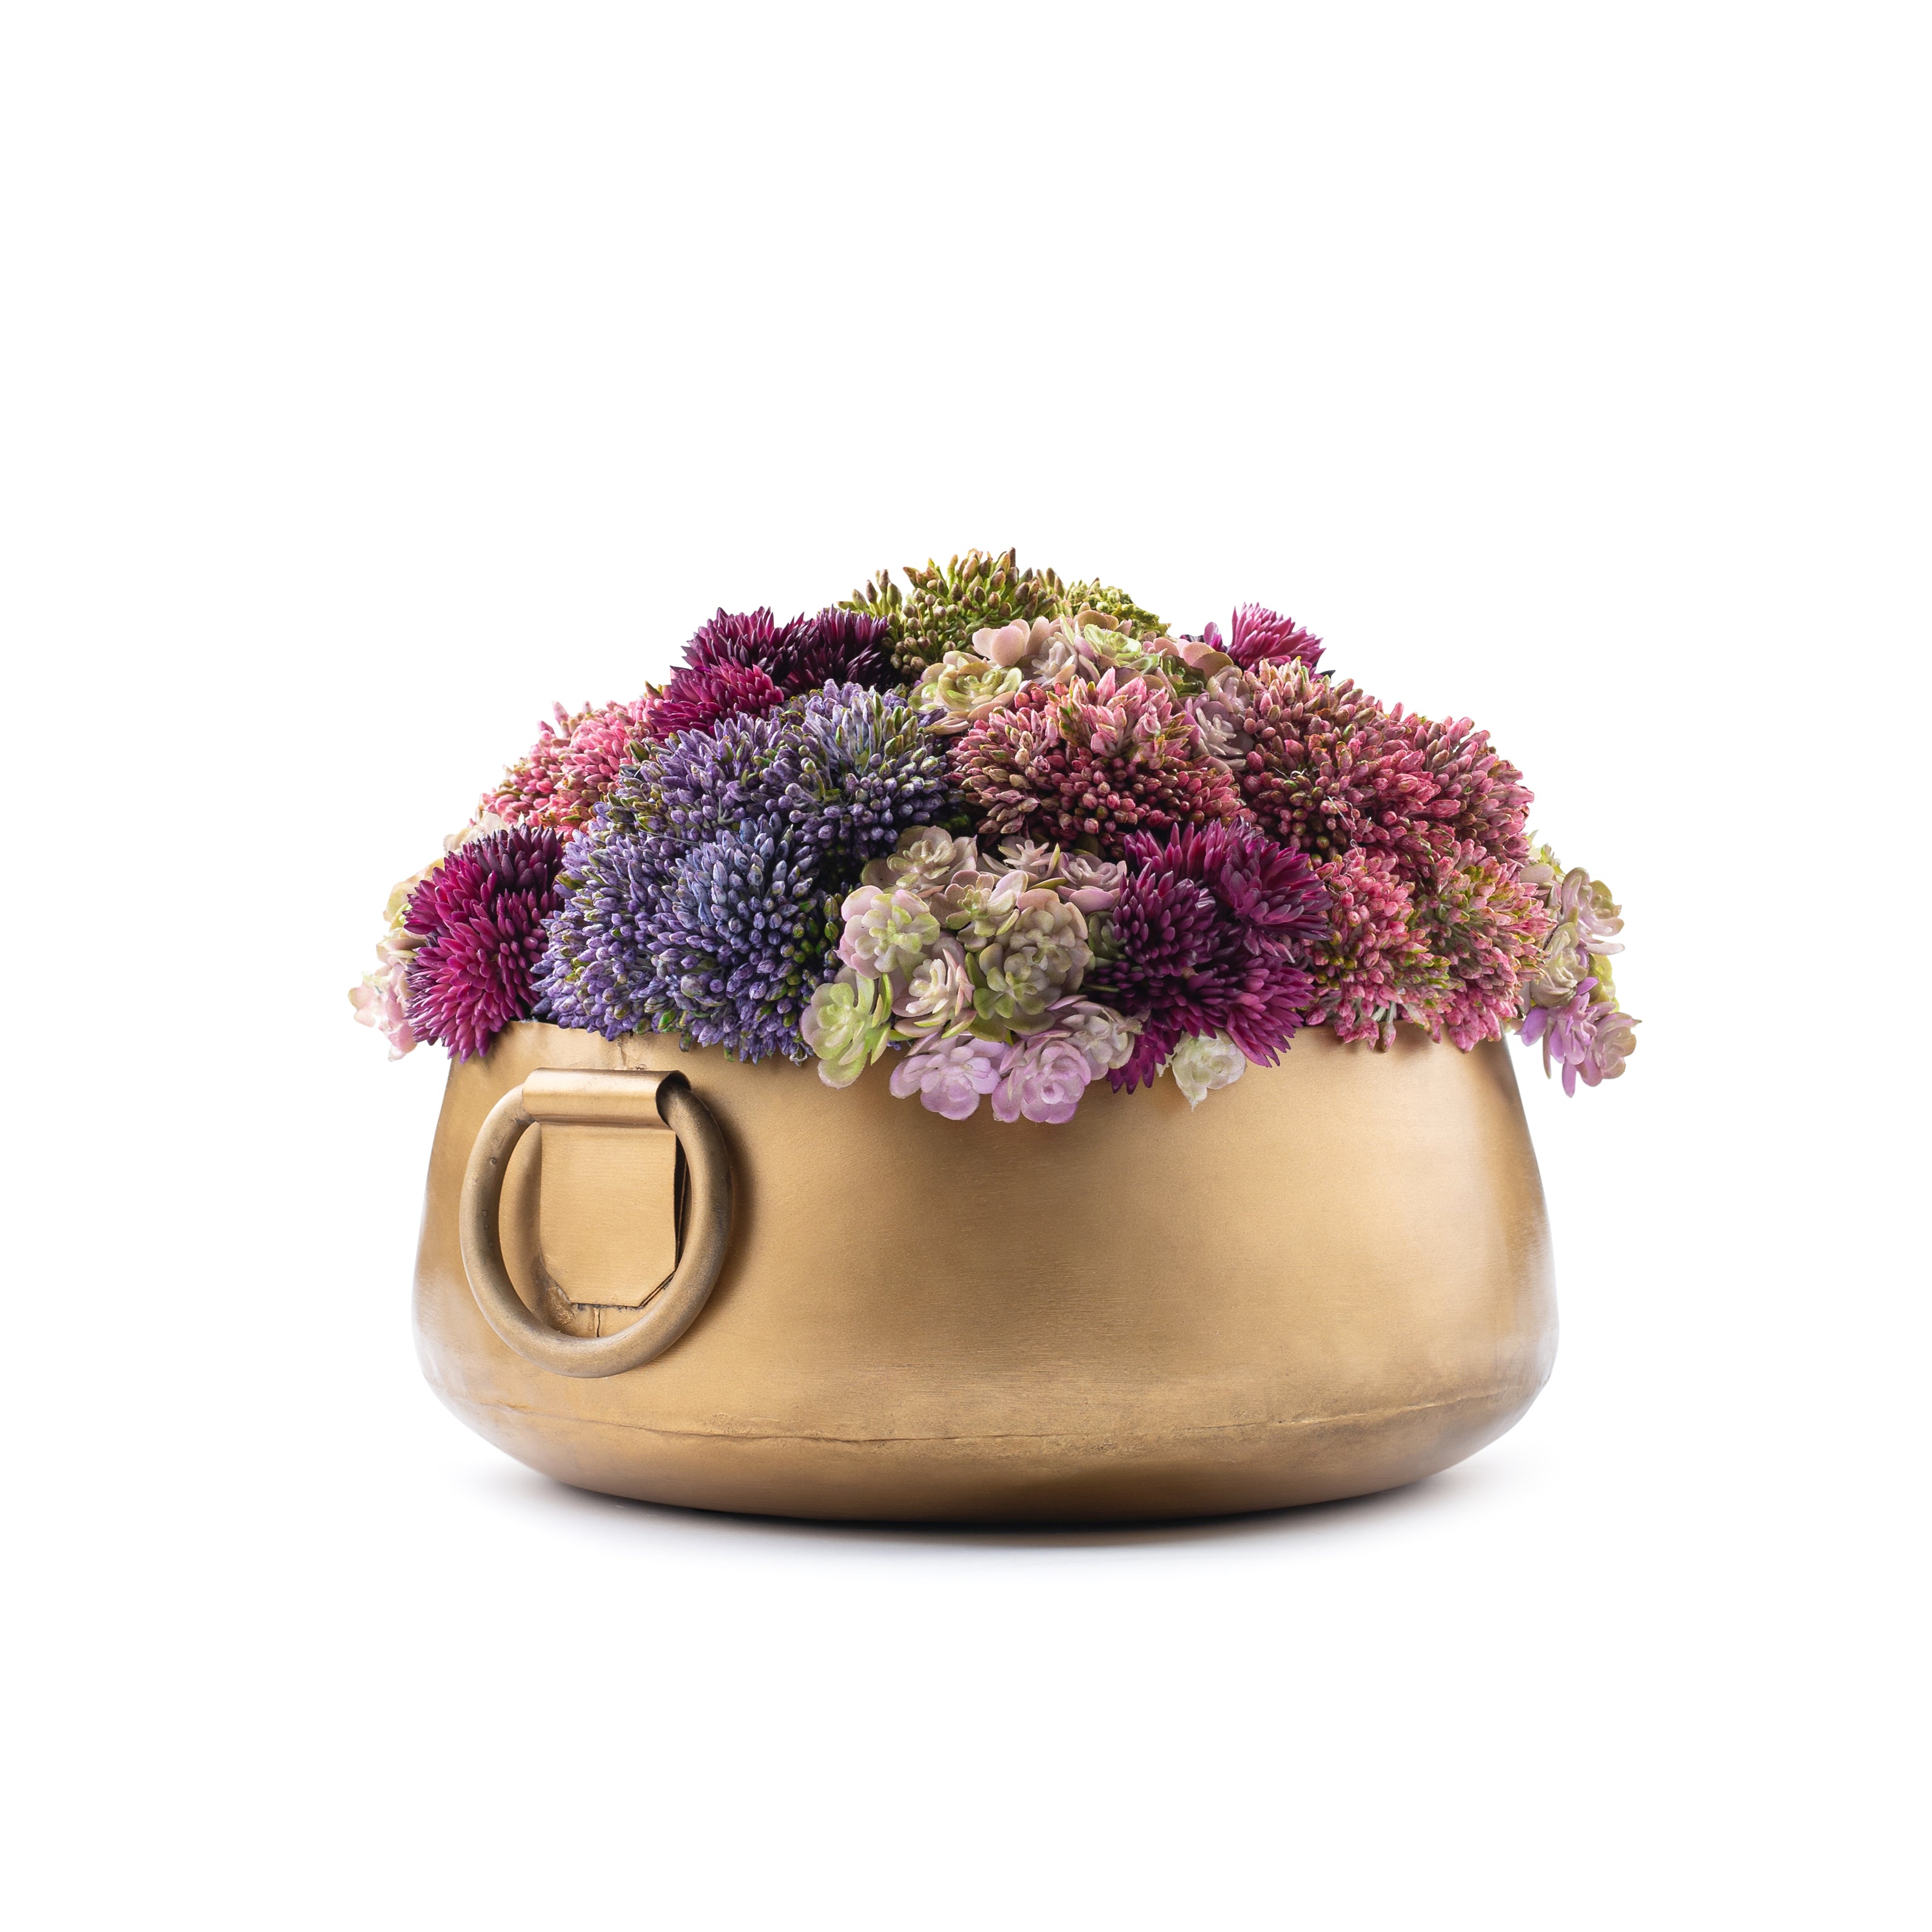 Gold Handle Floral Pot